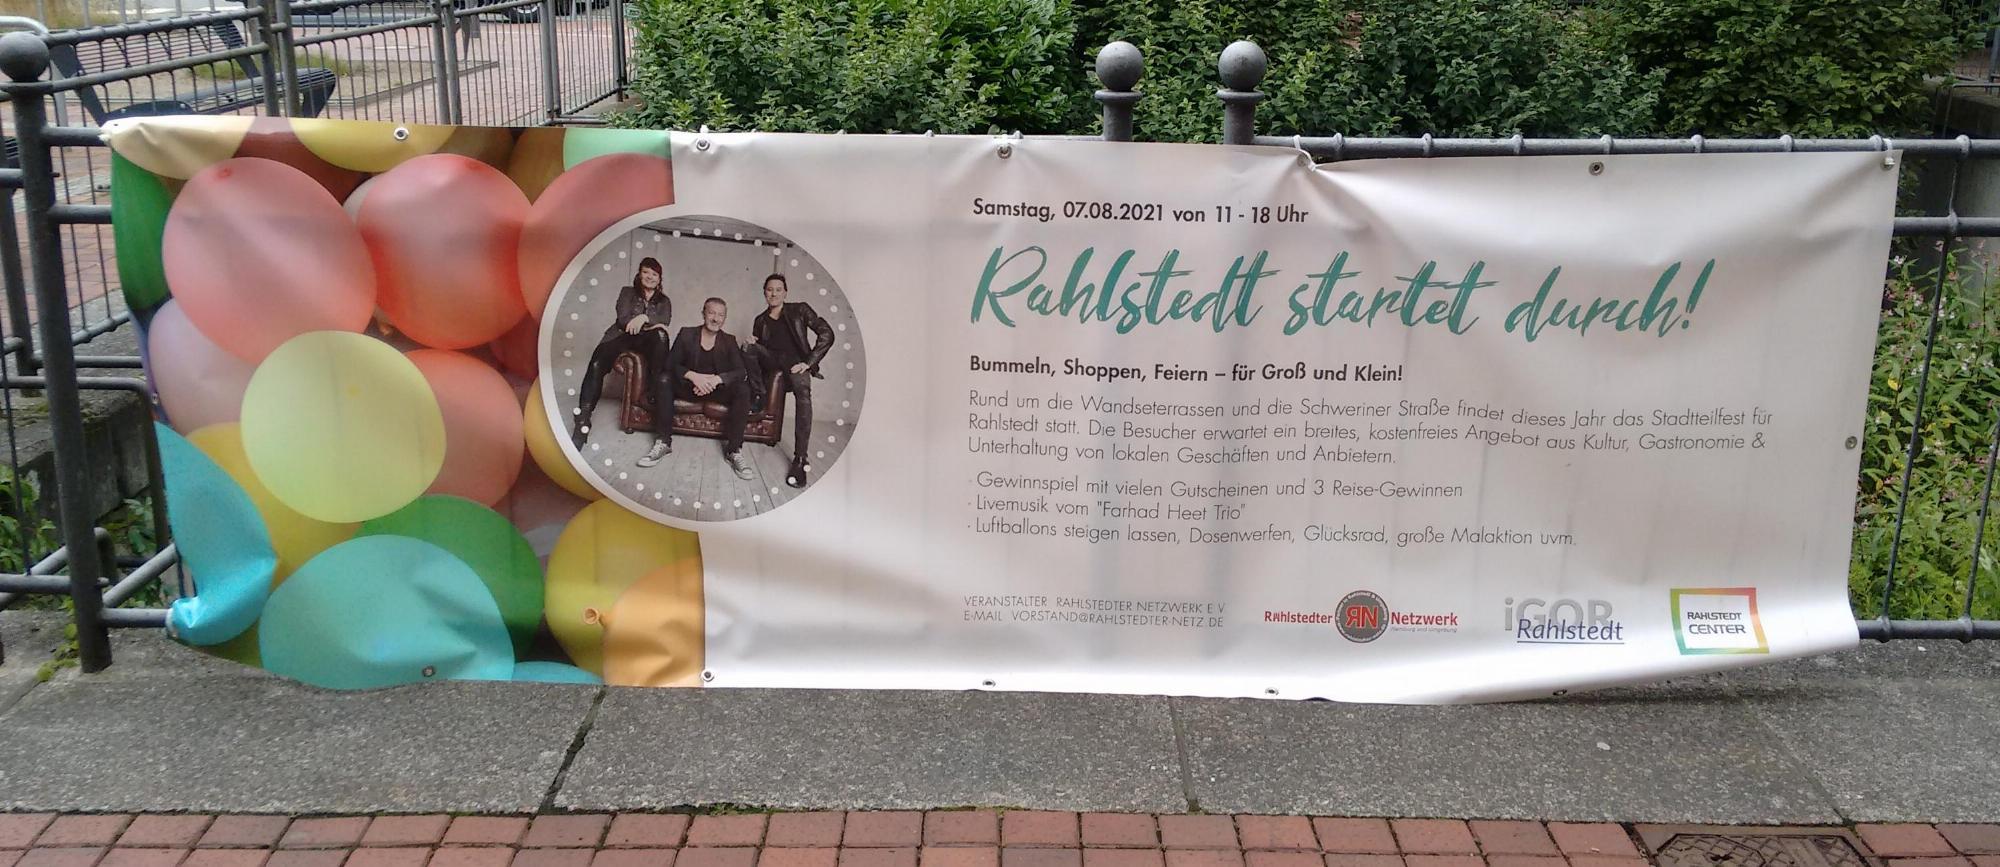 Banner "Rahlstedt startet durch!" 07.08.2021